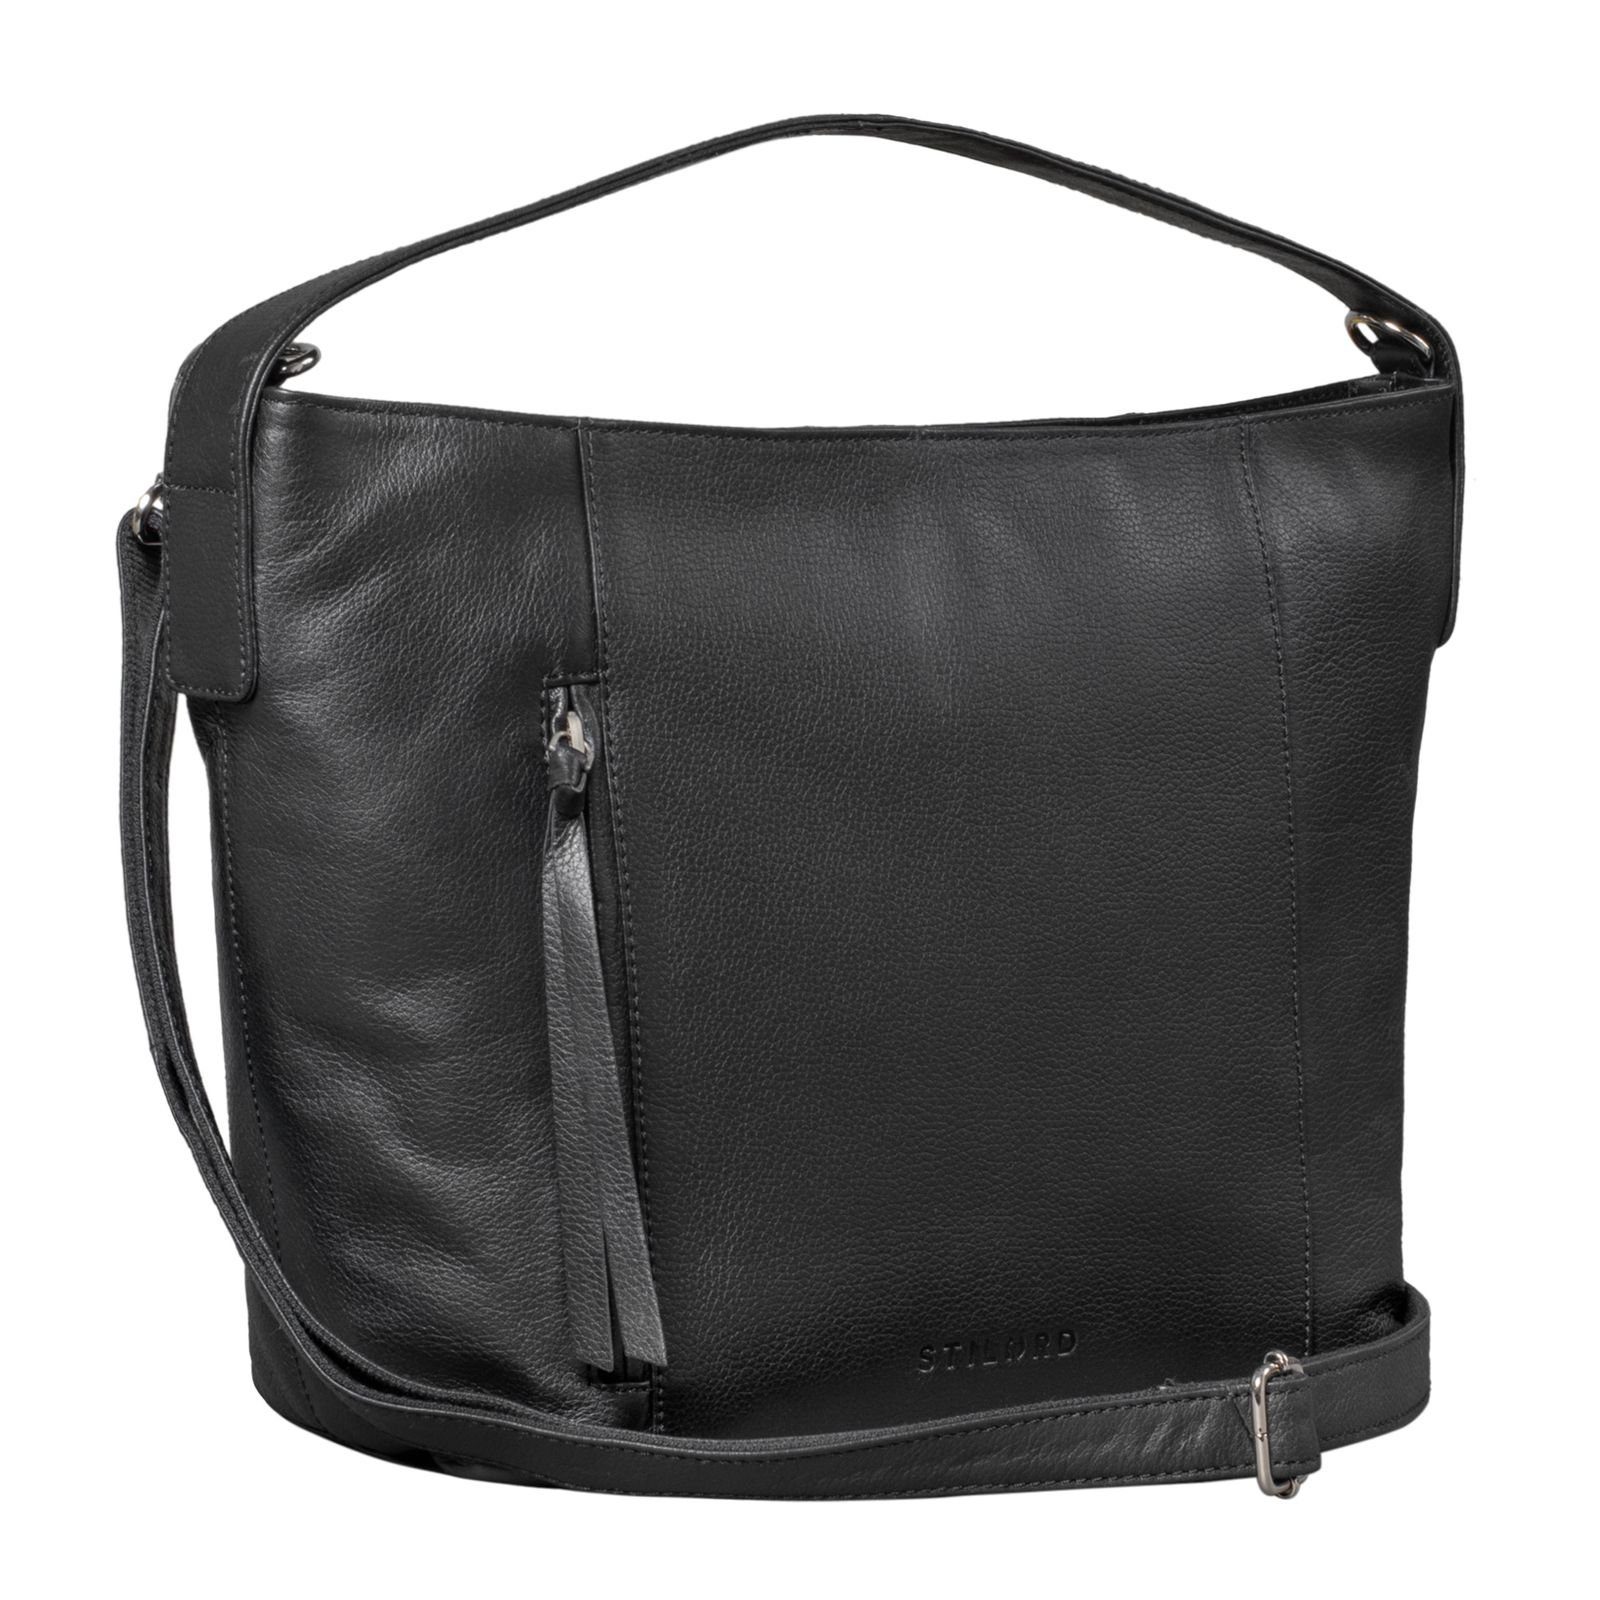 Handtasche "Marilyn" Damen Shopper STILORD schwarz Groß Leder Handtasche